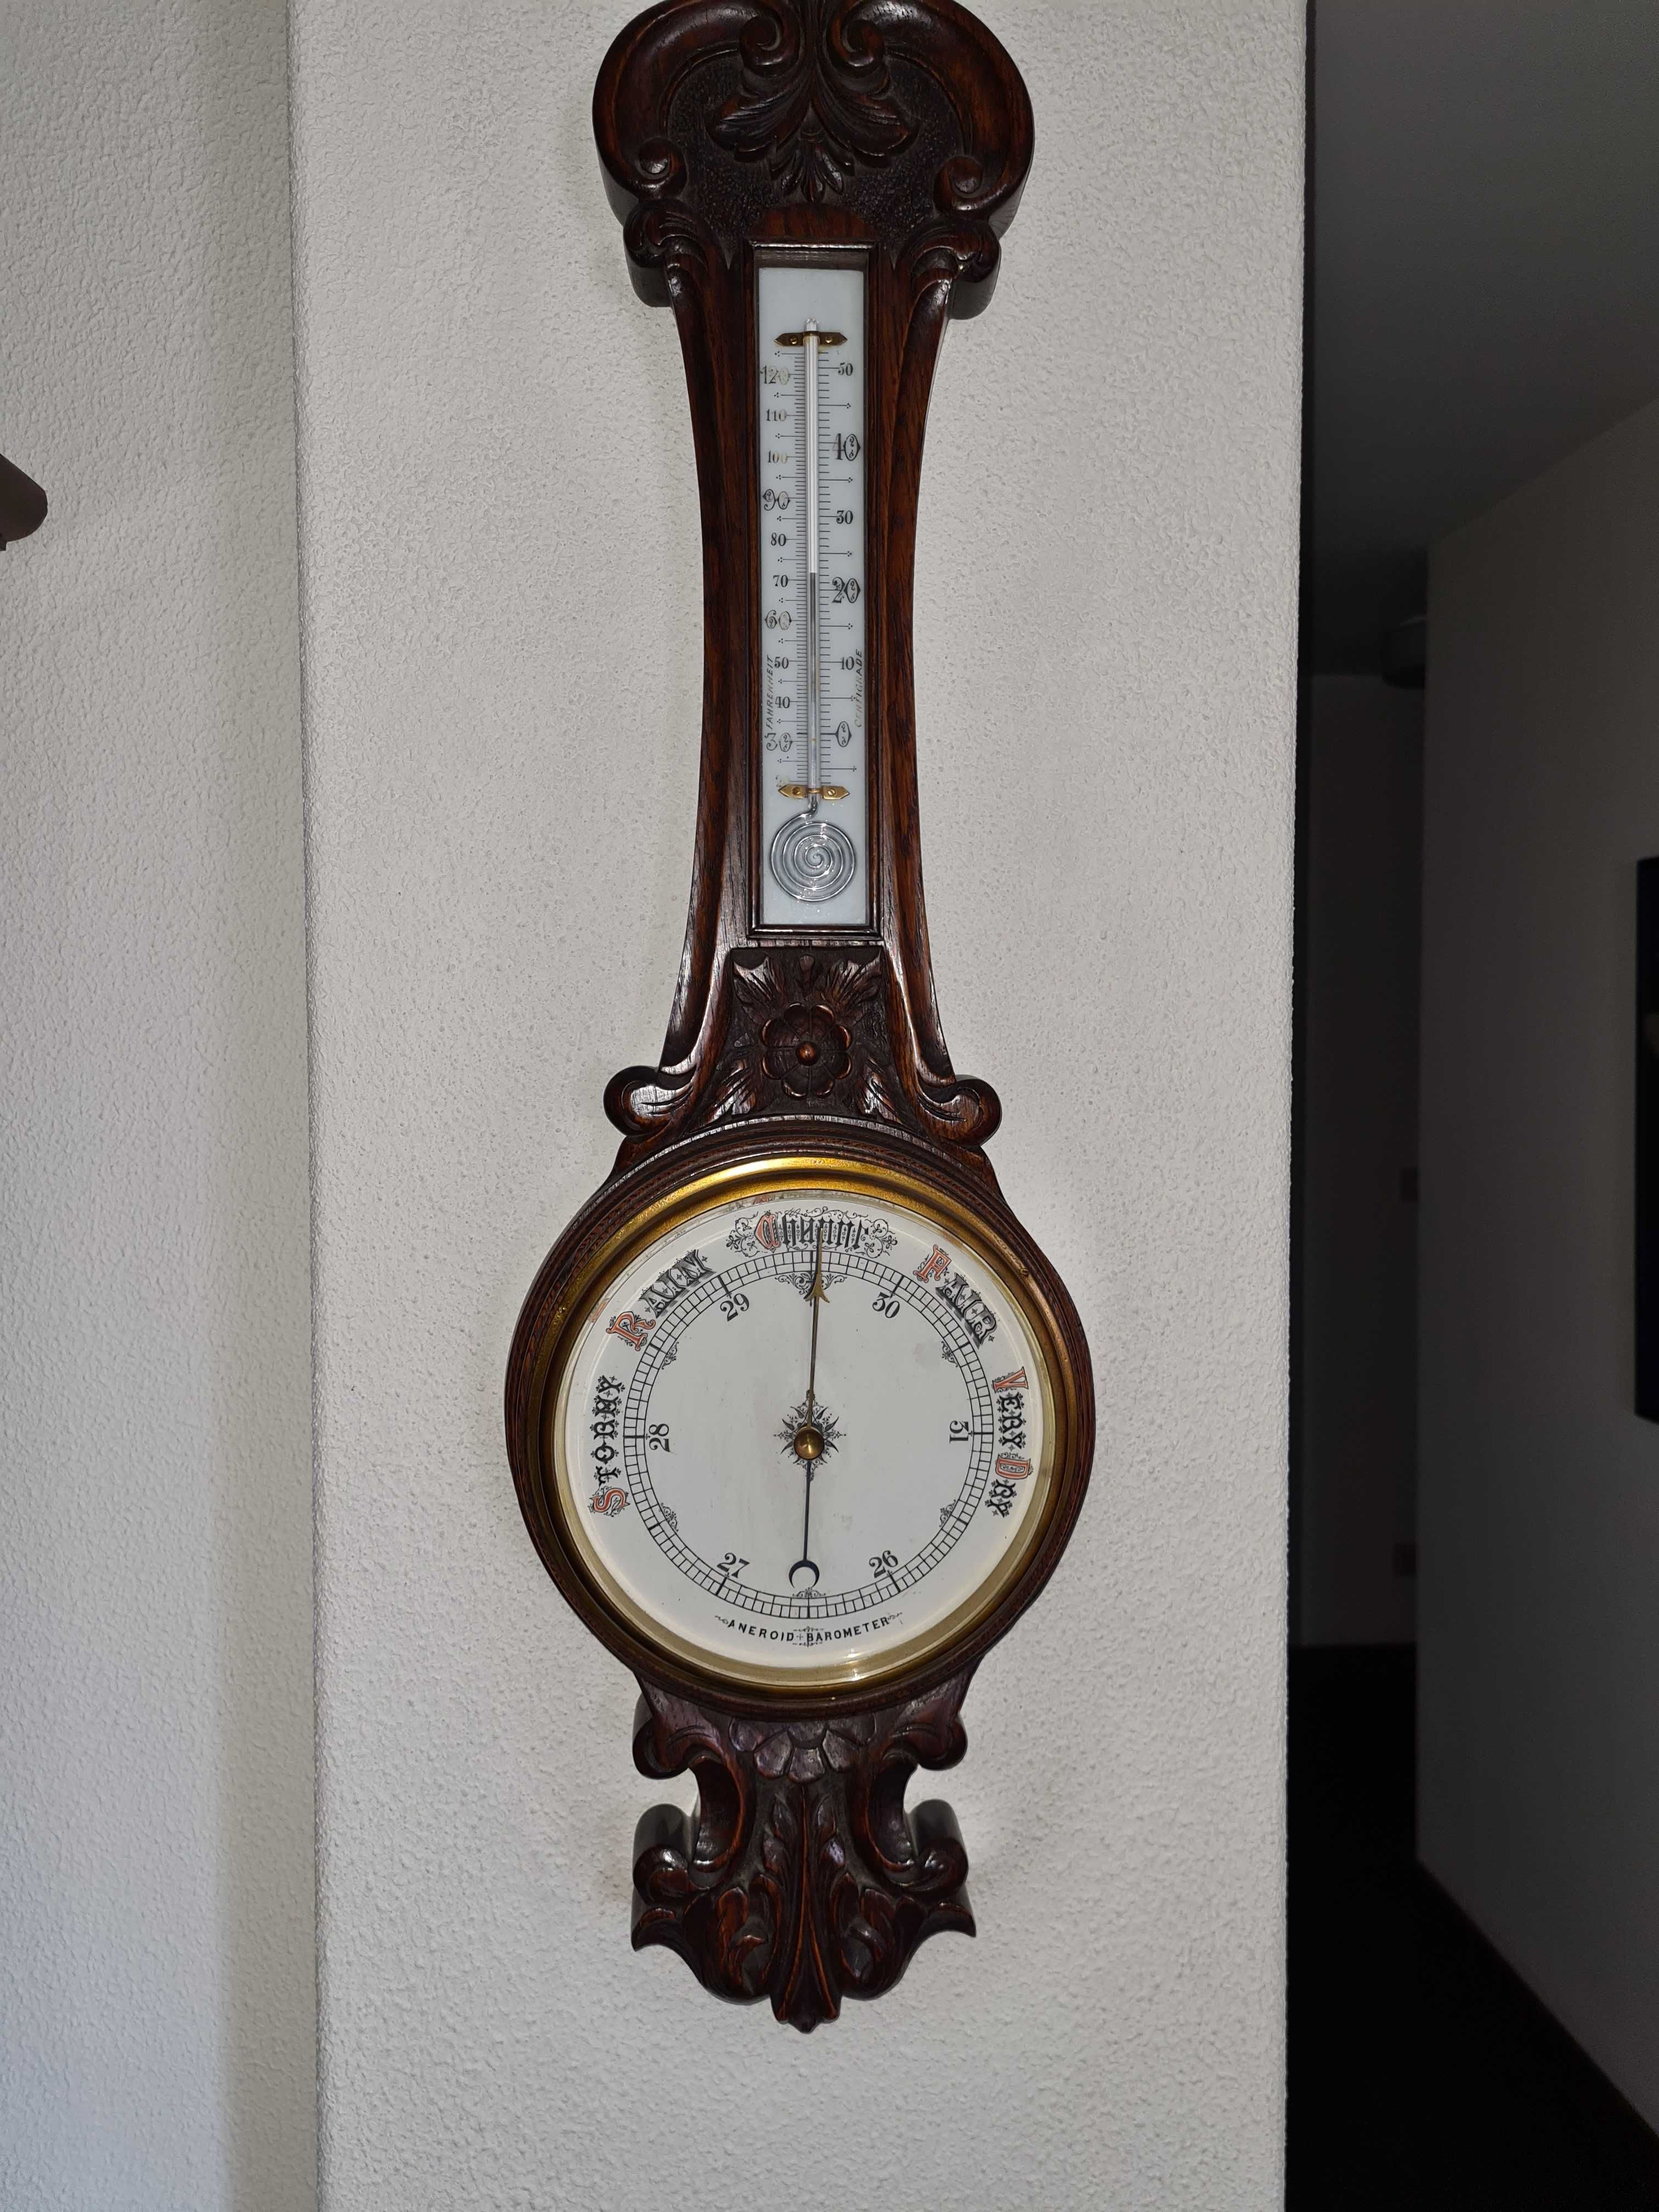 Barómetro aneroide e termómetro antigo